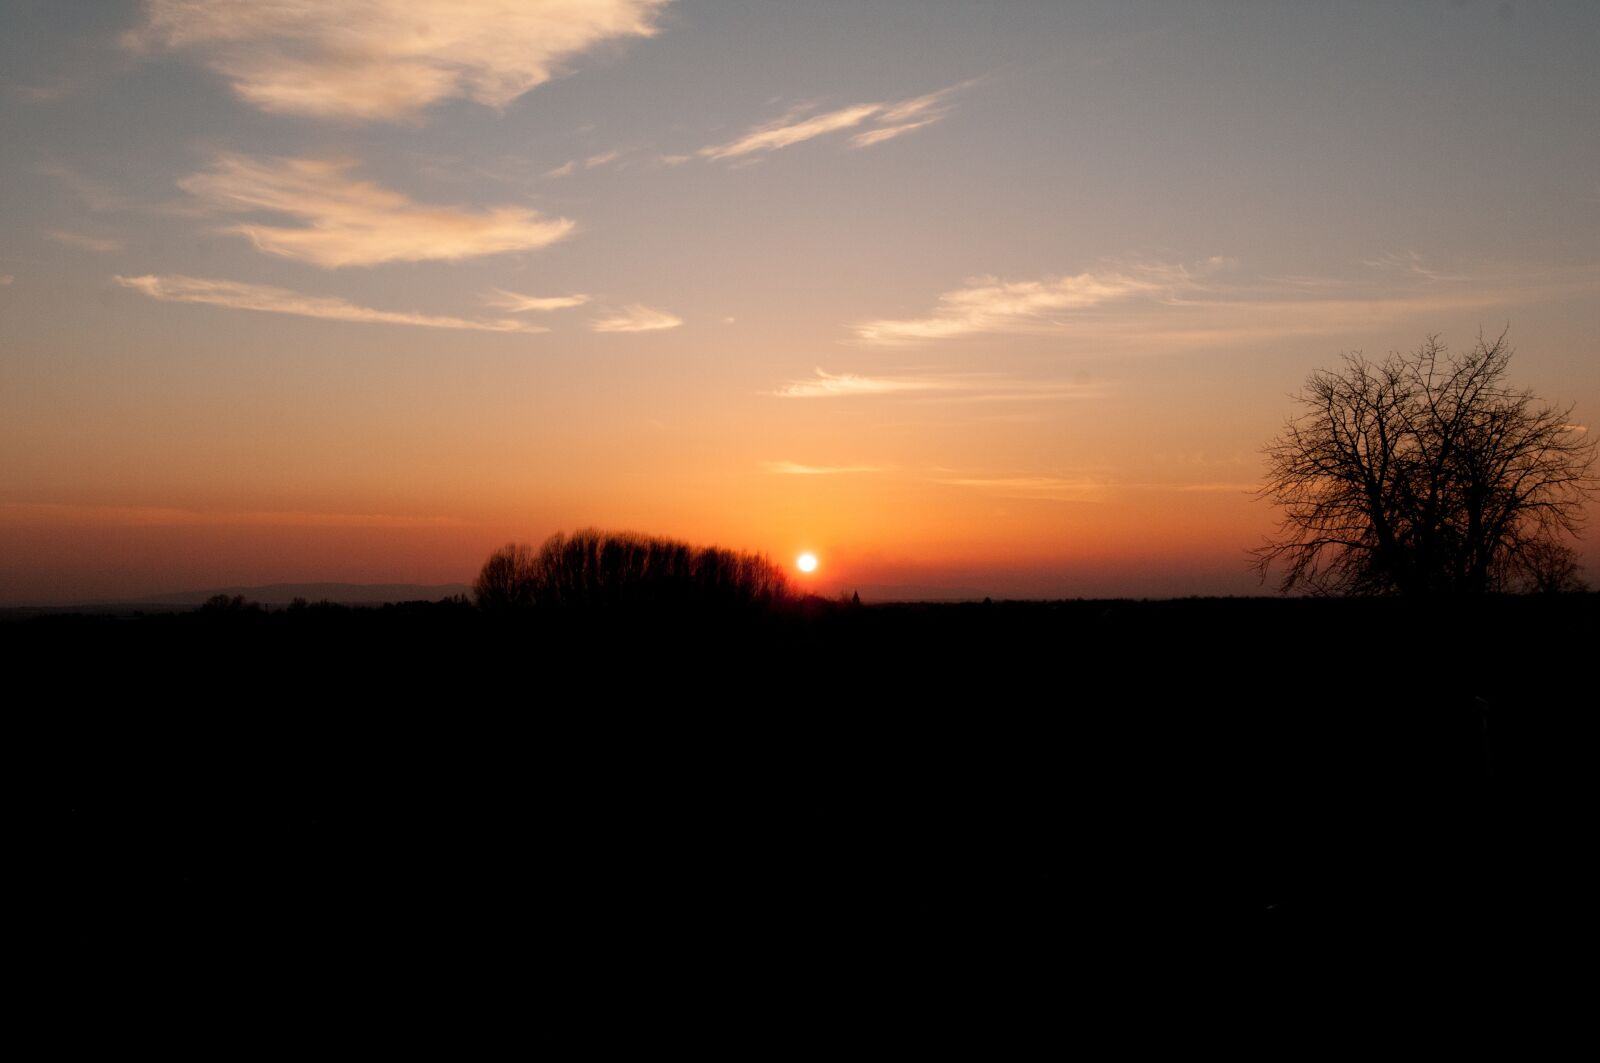 Nikon D300 + Tokina AT-X Pro 12-24mm F4 (IF) DX sample photo. Sunset, twilight, evening photography